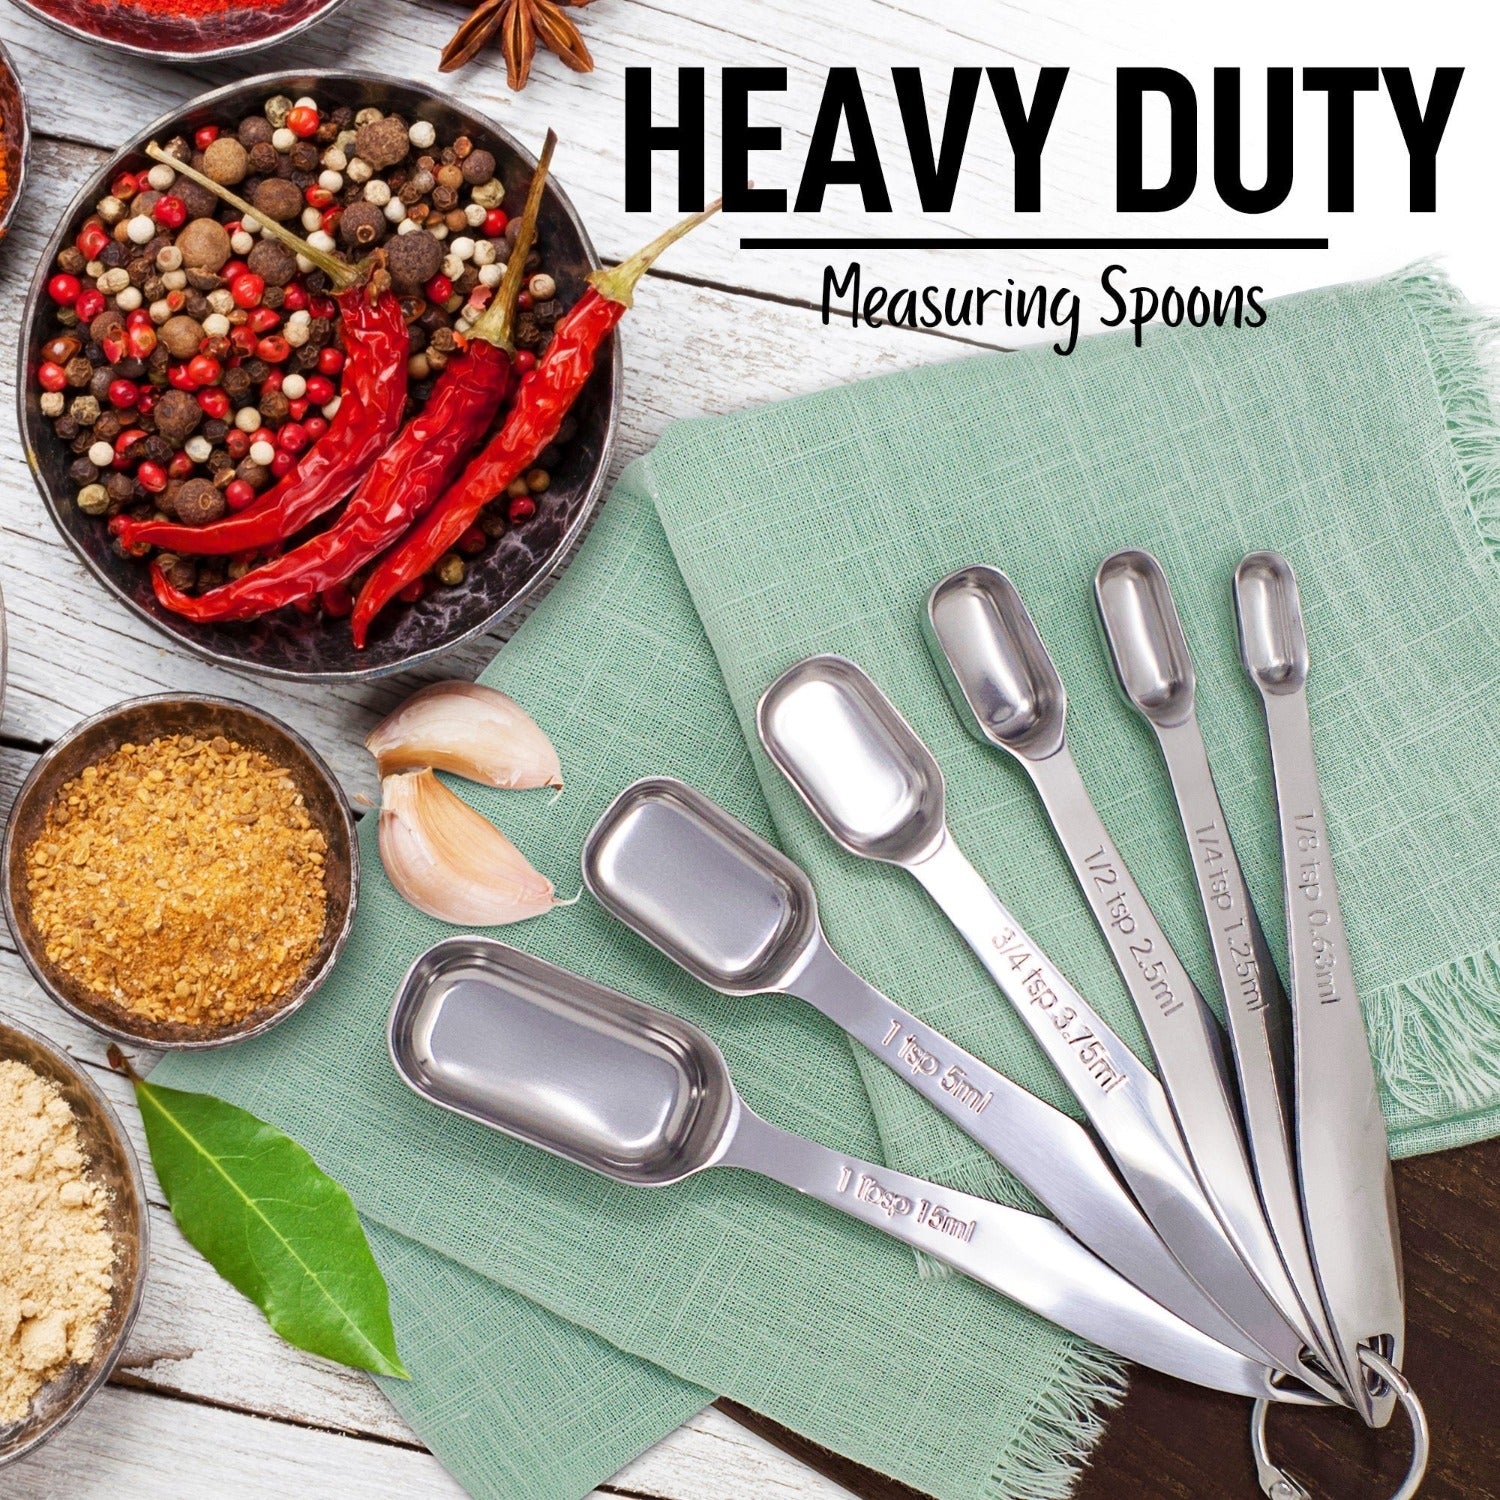 Buy Stainless Steel Measuring Spoons